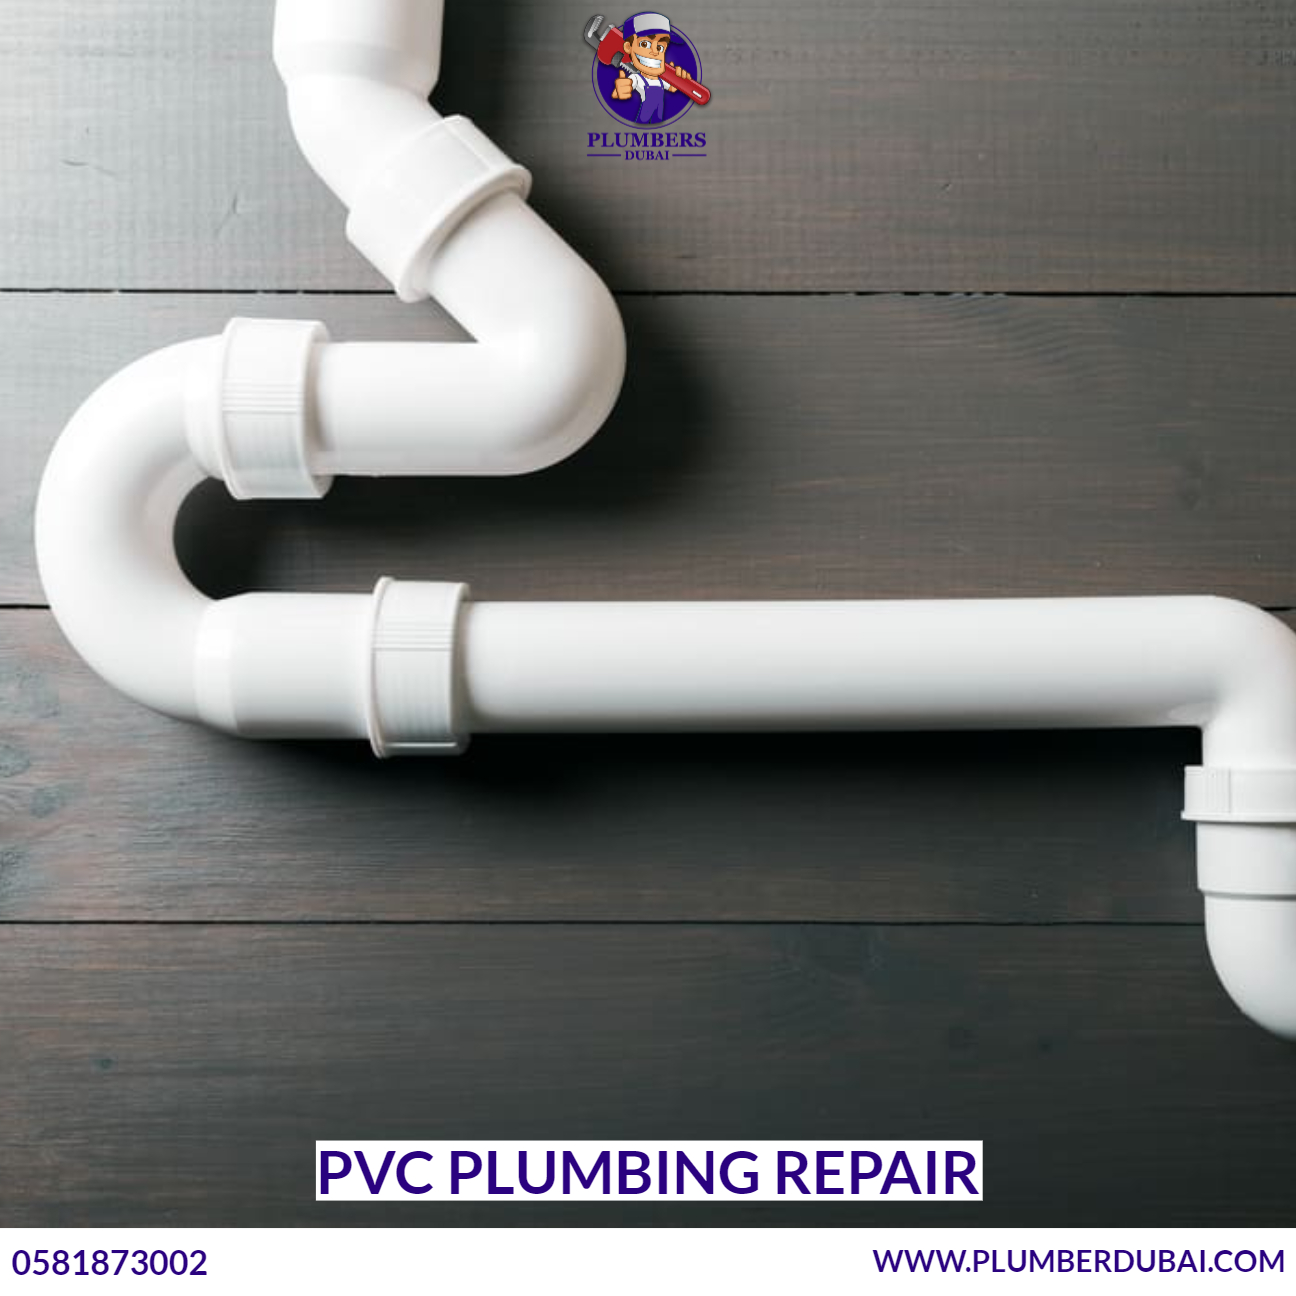 PVC Plumbing Repair